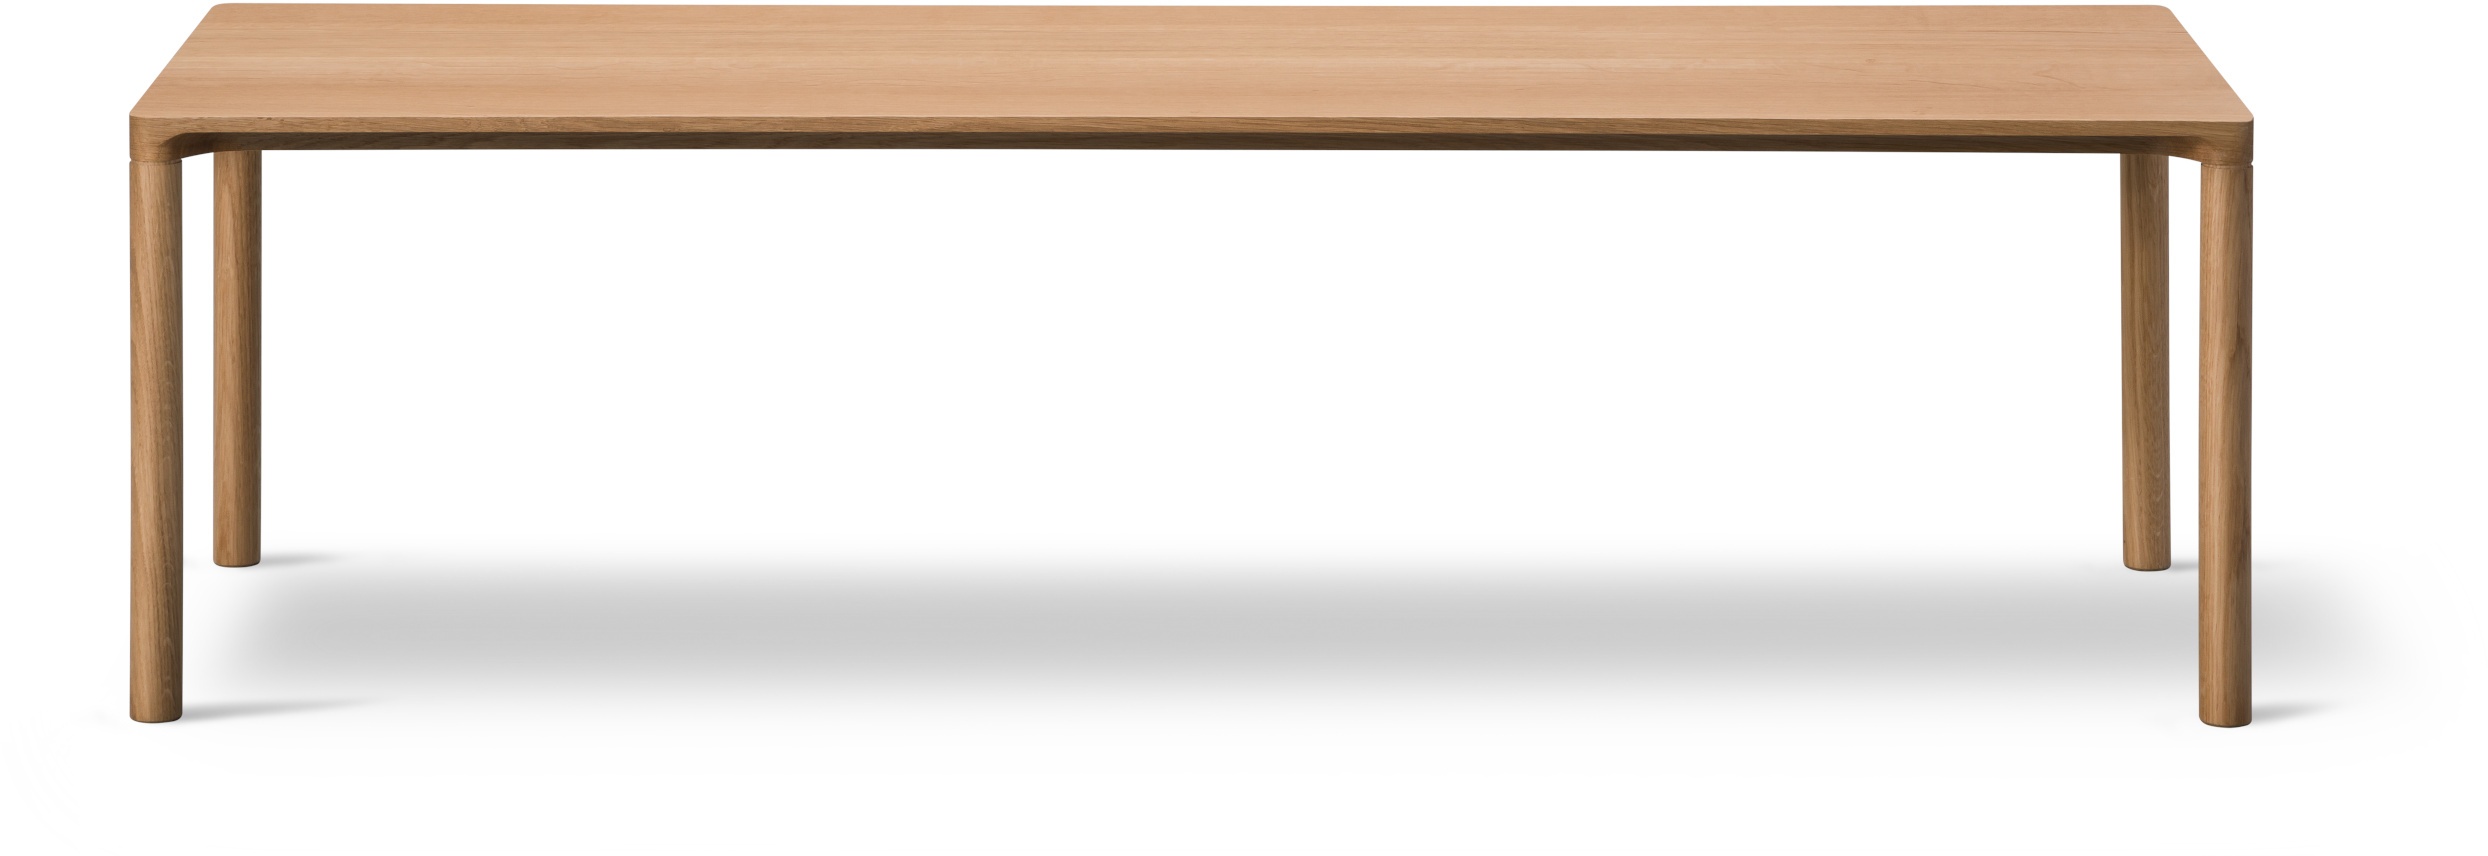 Piloti Wood Couchtisch, 120 x 39 cm, eiche geölt